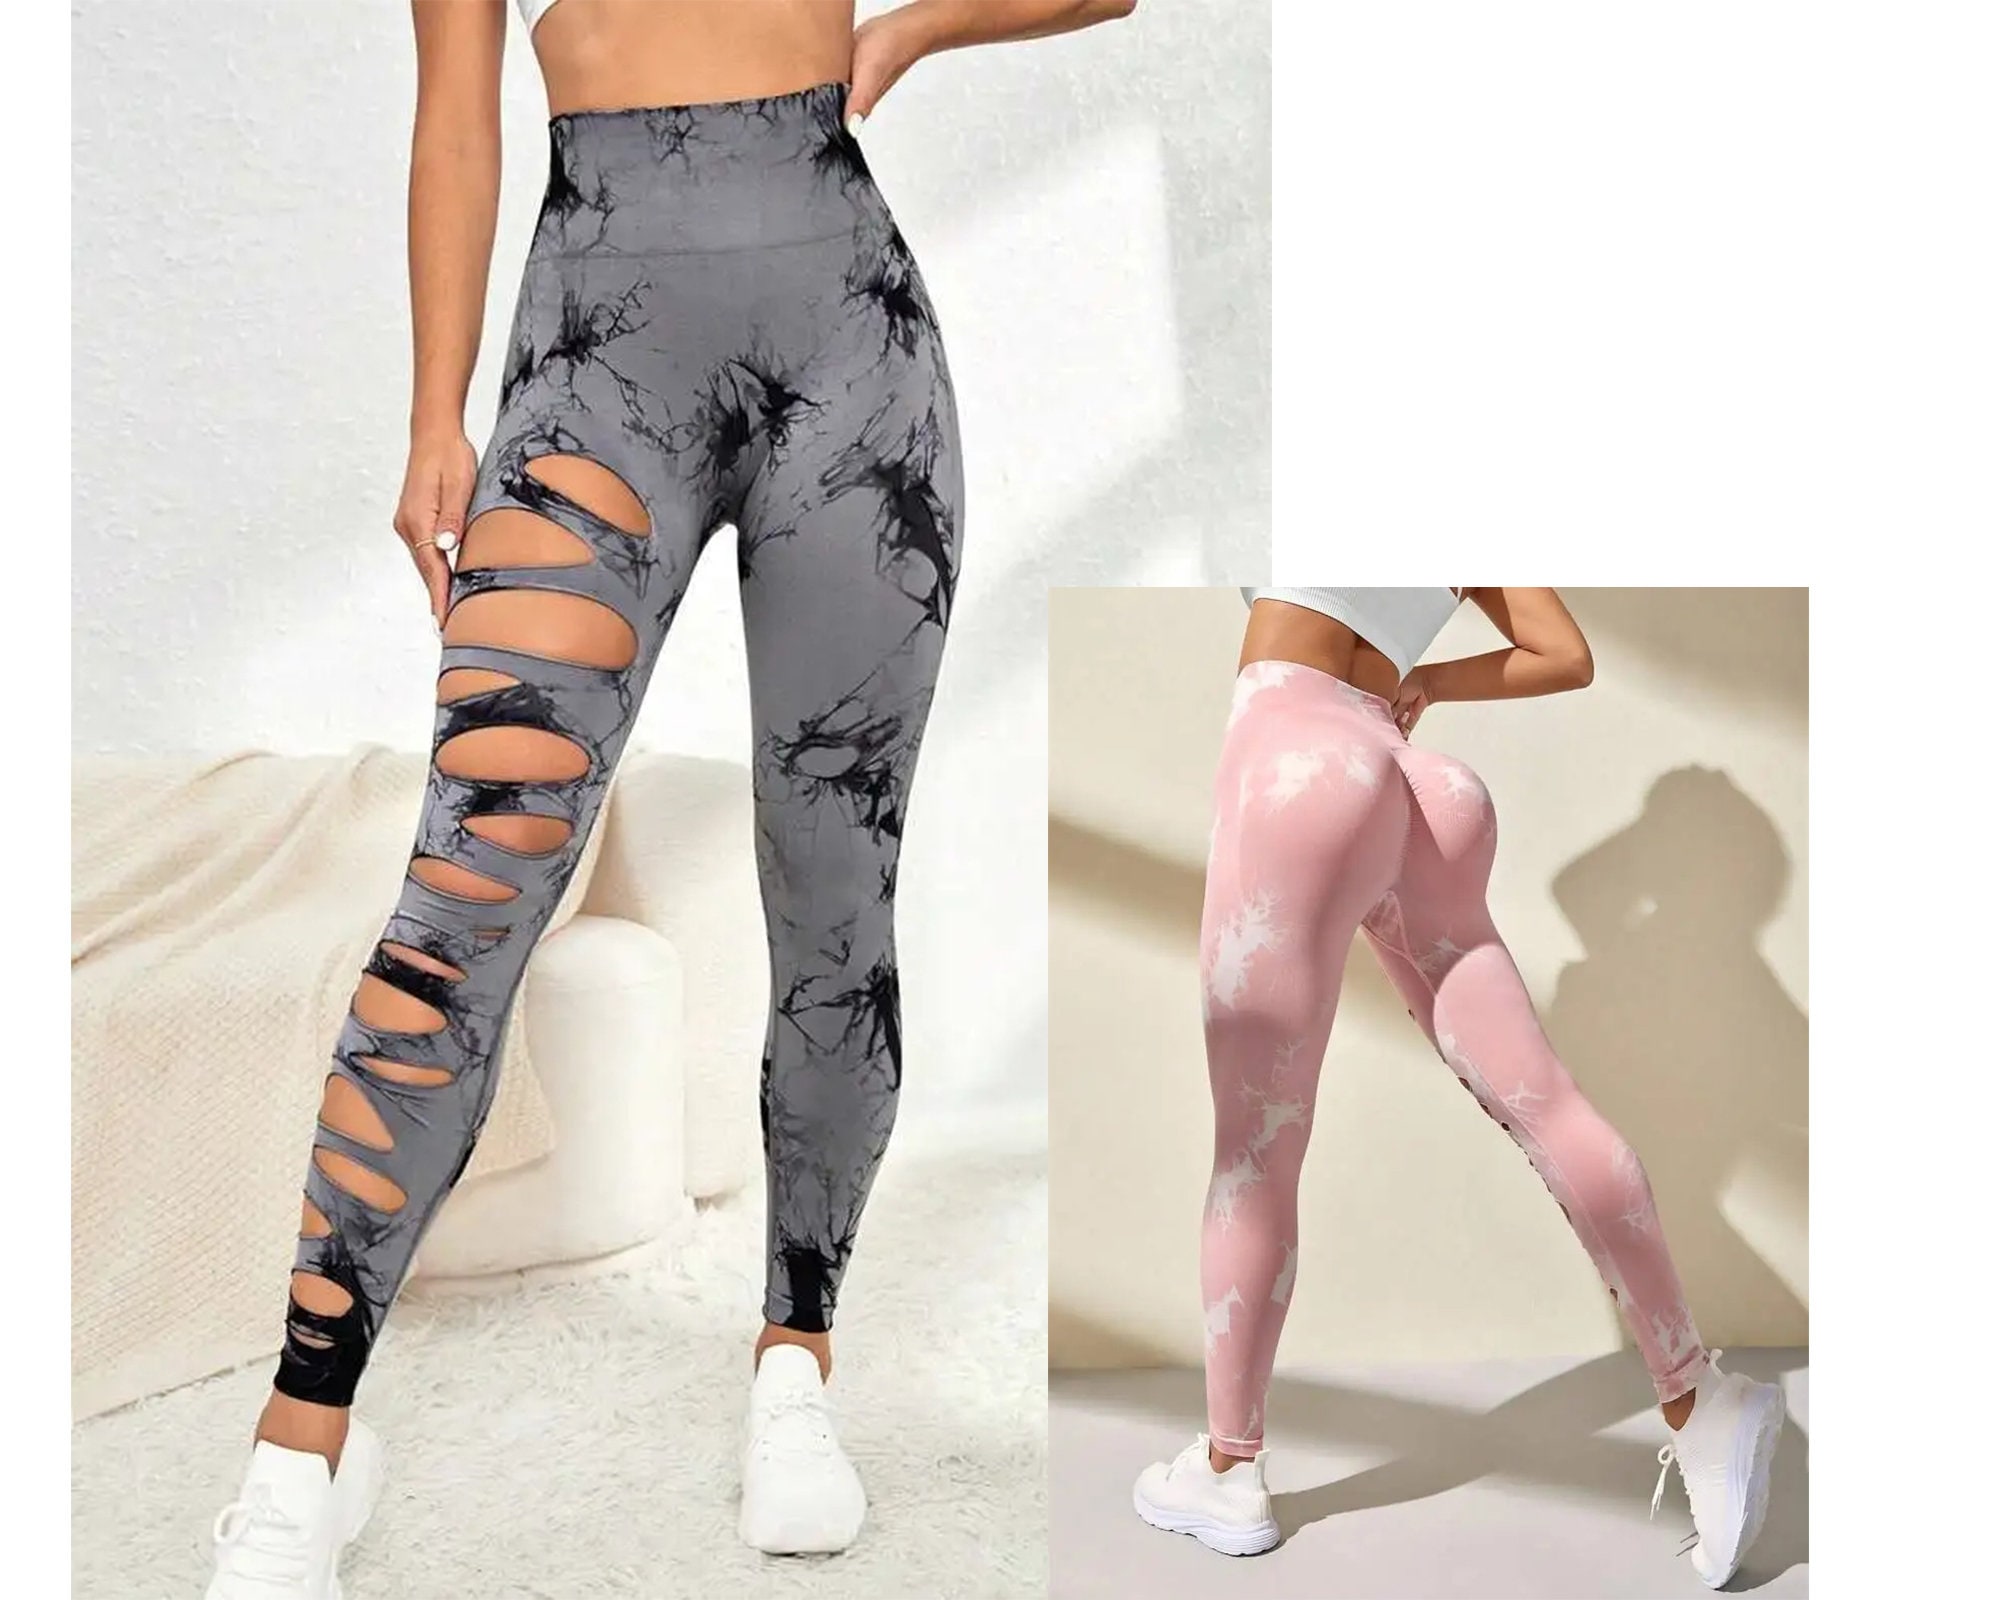 Pink Camo Leggings, Tiktok Leggings for Women, Workout Exercise